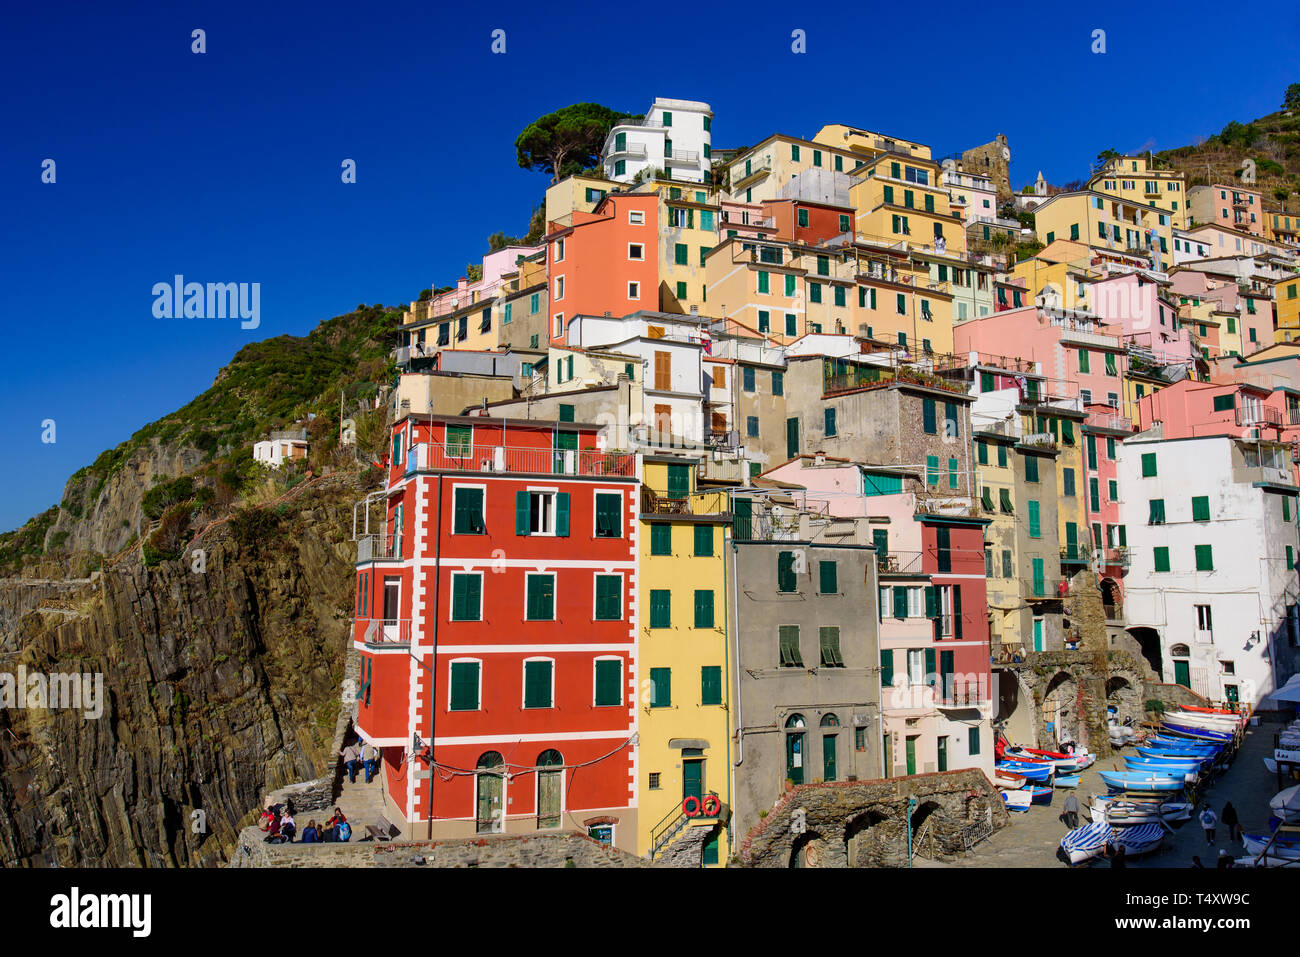 Riomaggiore, uno dei cinque borghi mediterranei in Cinque Terre, Italia, famosa per le sue case colorate Foto Stock